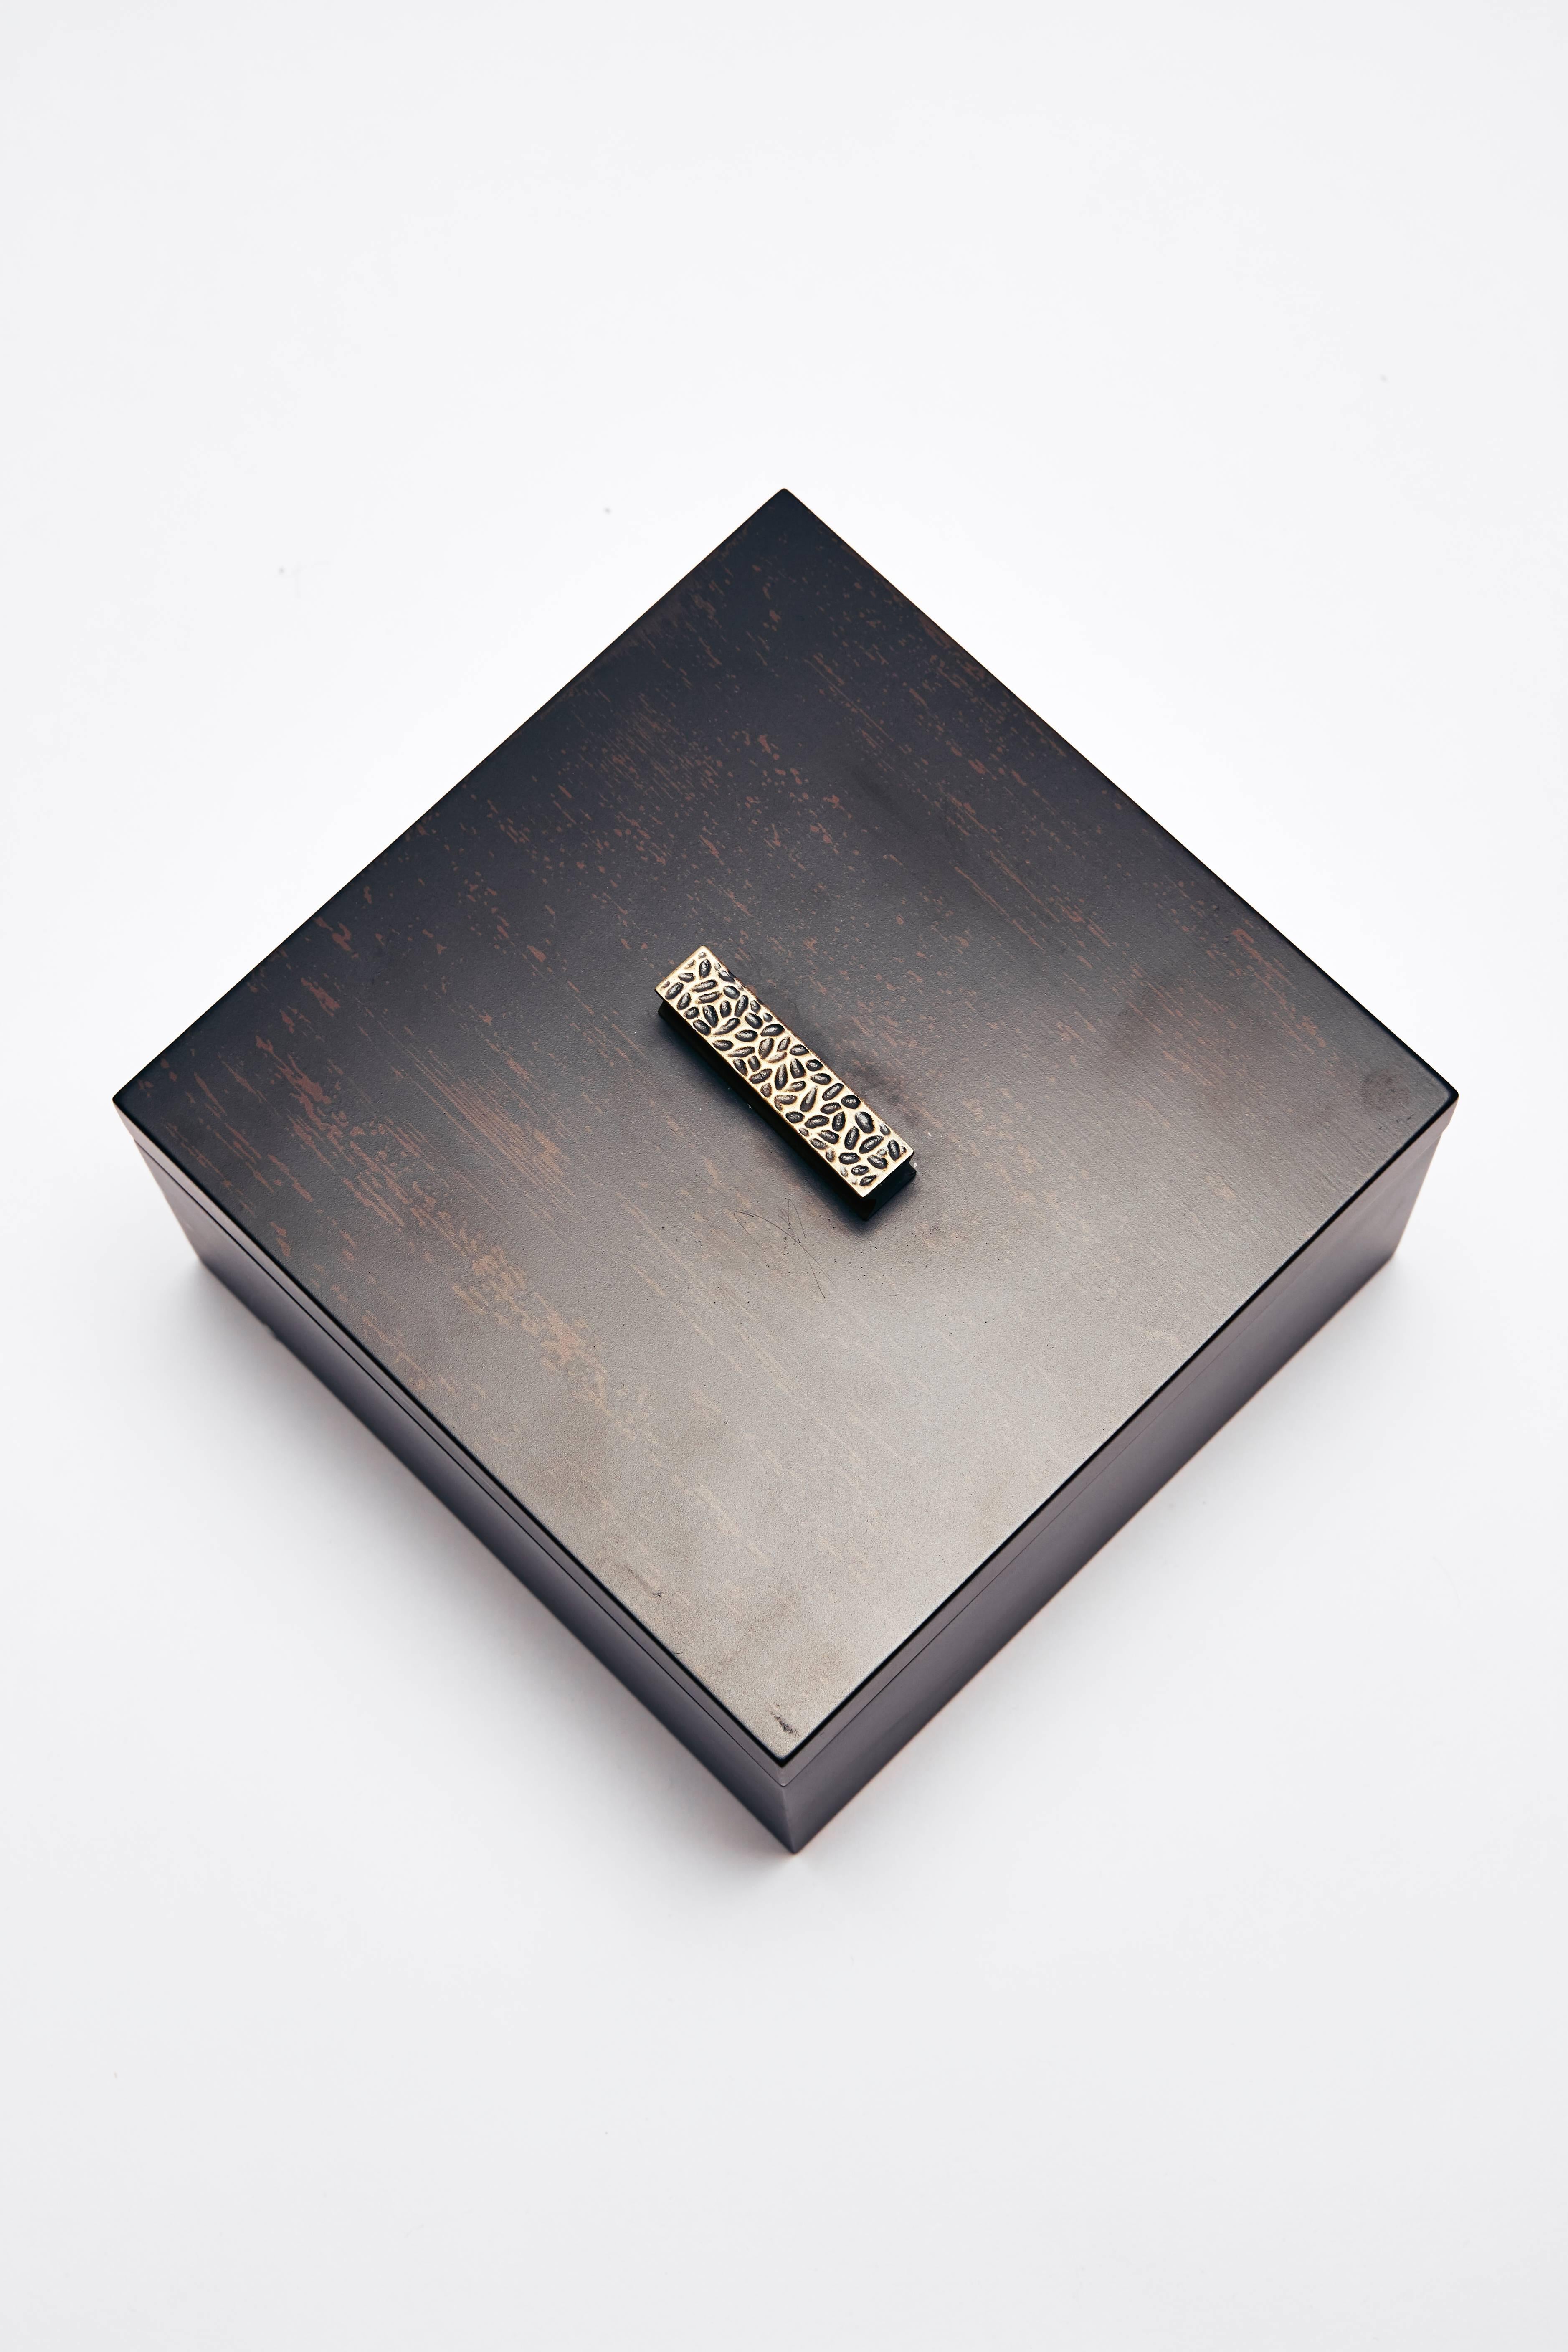 Minimalist Decorative Boxes, ELLA by Reda Amalou Design, 2016 - Black & Brown Lacquer For Sale